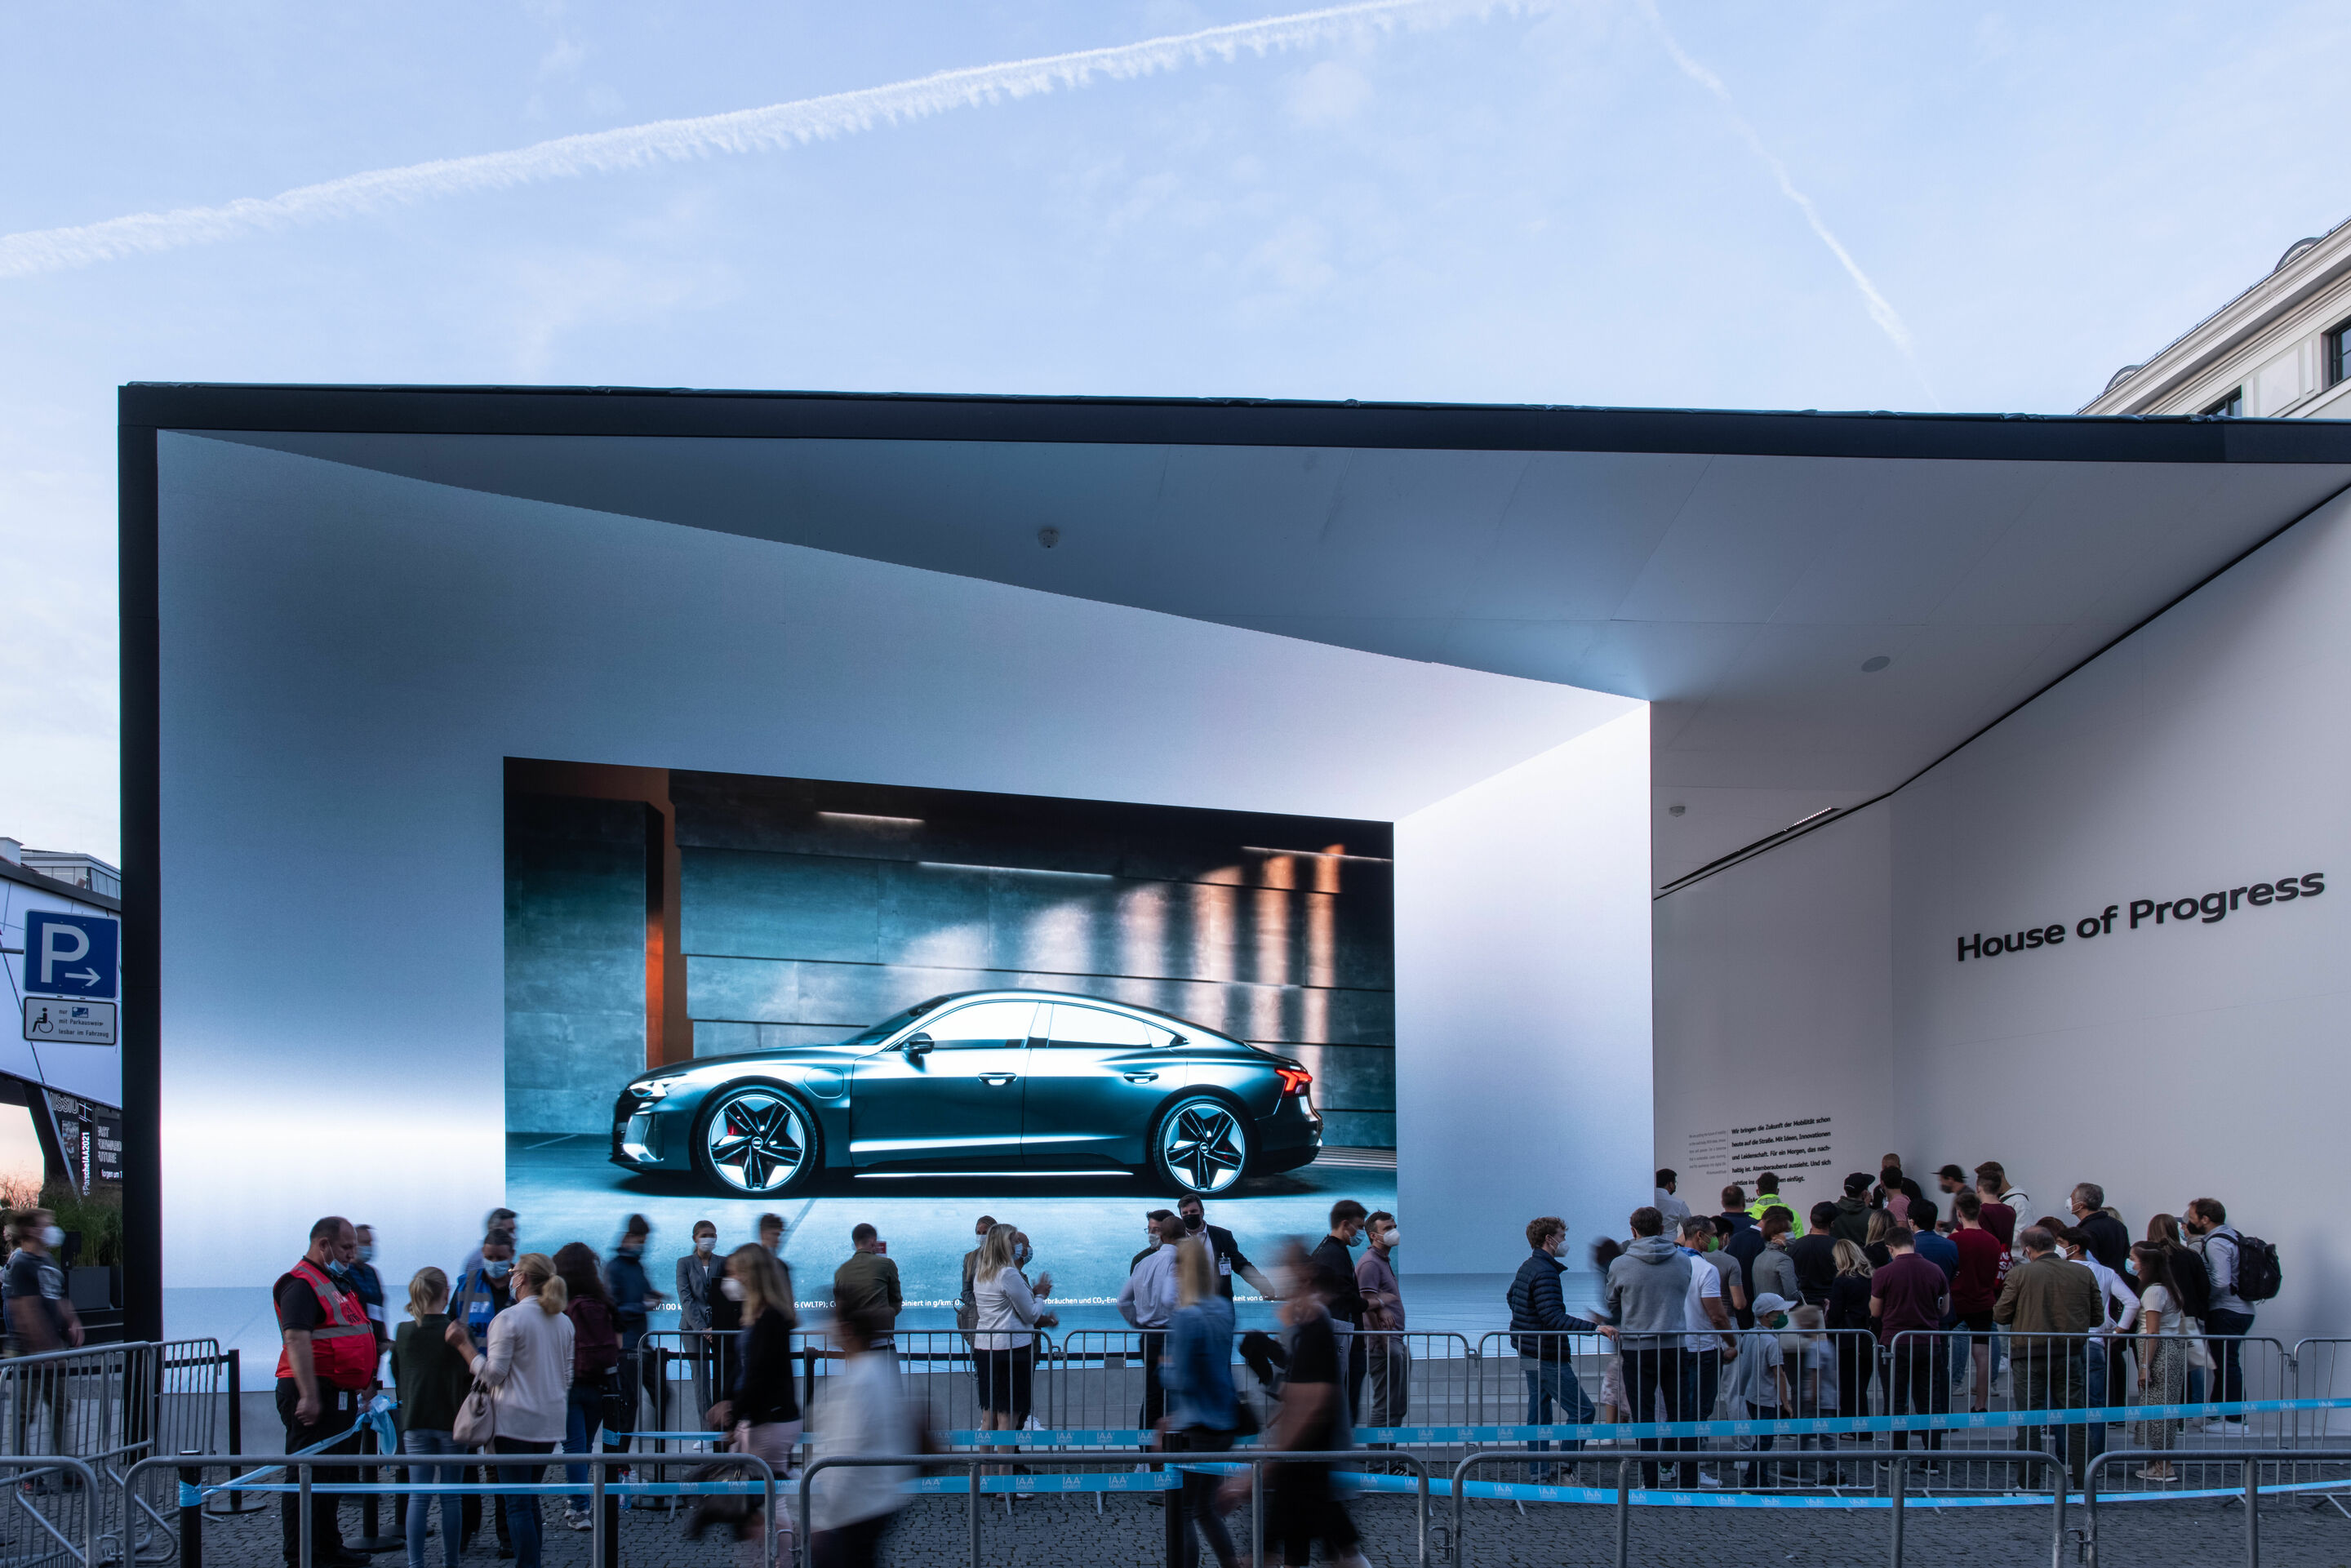 Audi diskutiert gesellschaftliche Dimension des autonomen Fahrens mit Expert_innen auf IAA